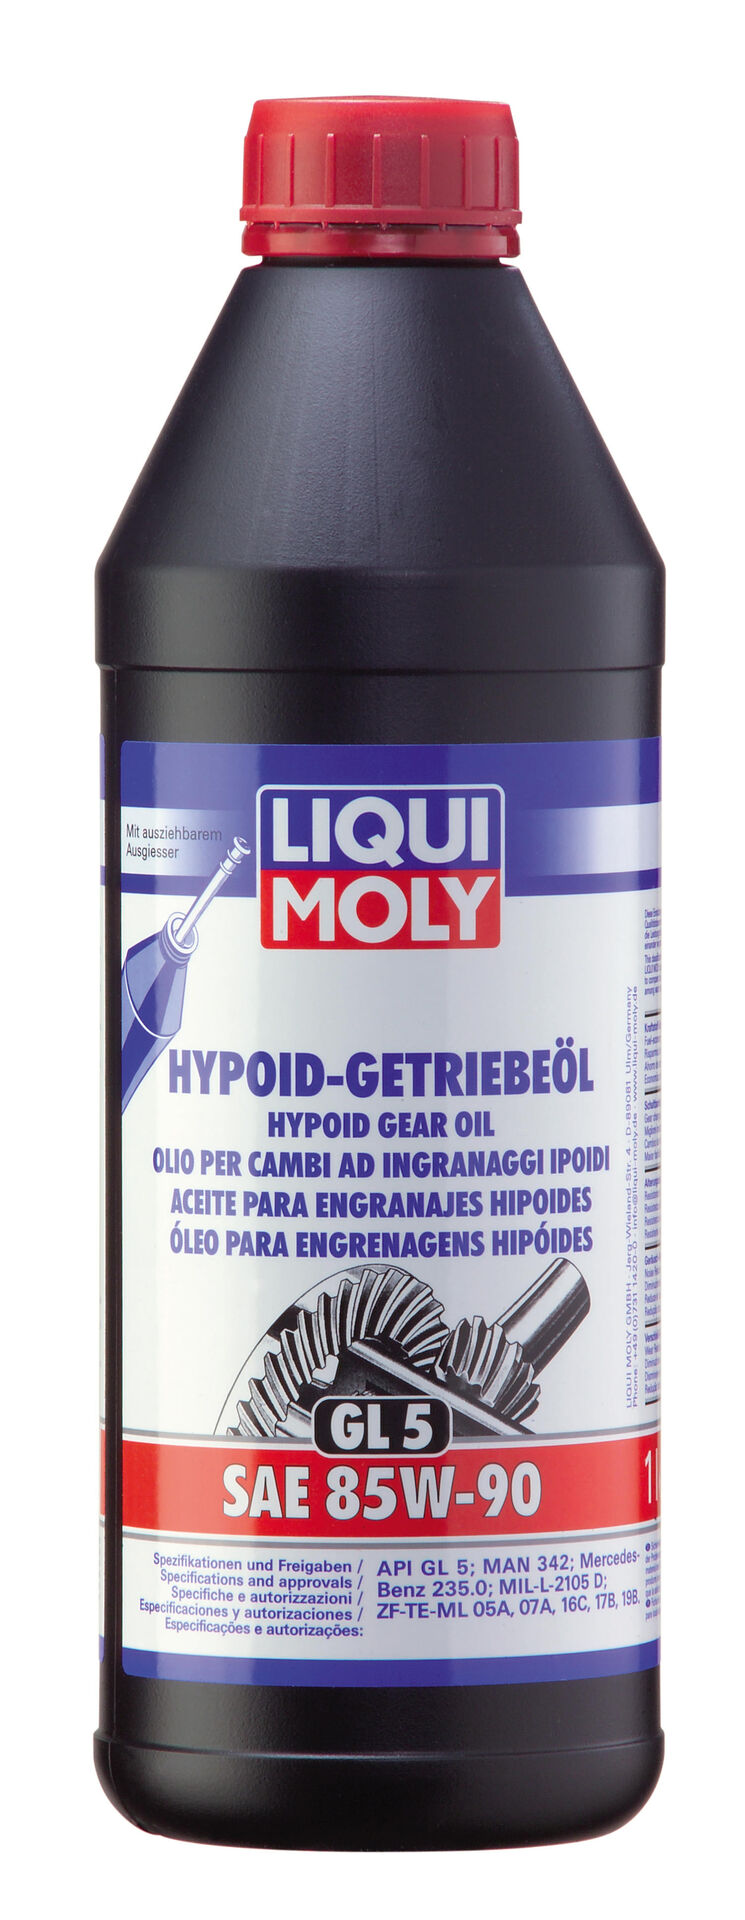 LIQUI-MOLY Hypoid-Getriebeöl (GL 5) SAE 85W-90 1 l 